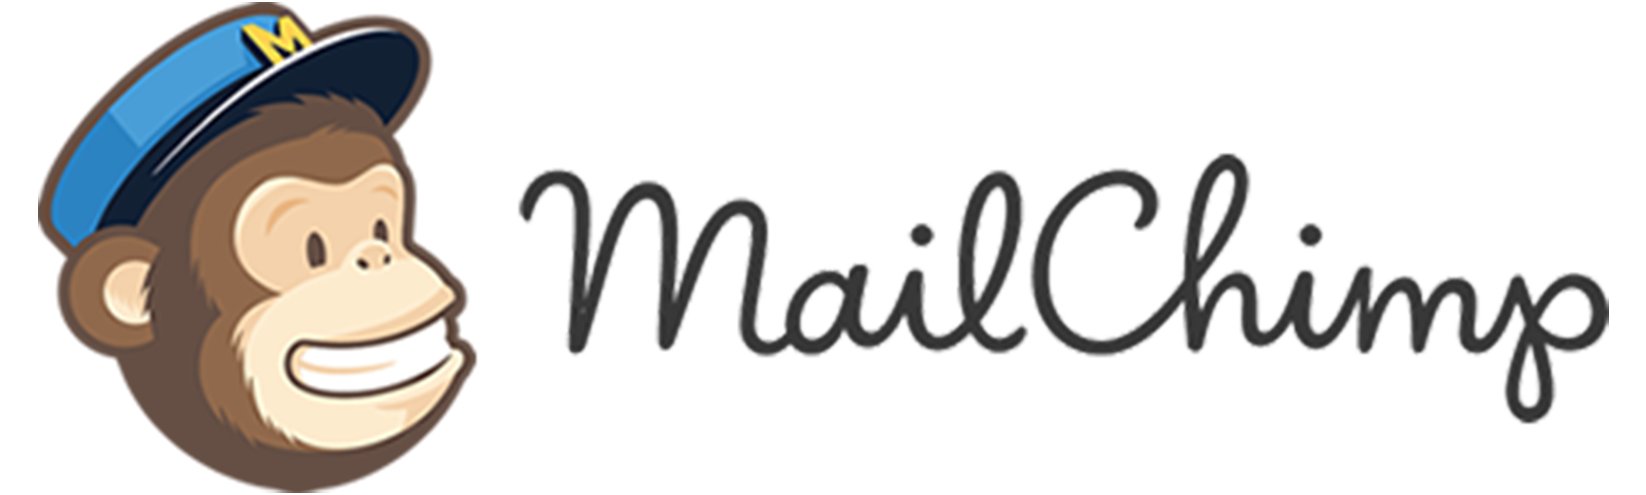 mailchimp-freddie-icon